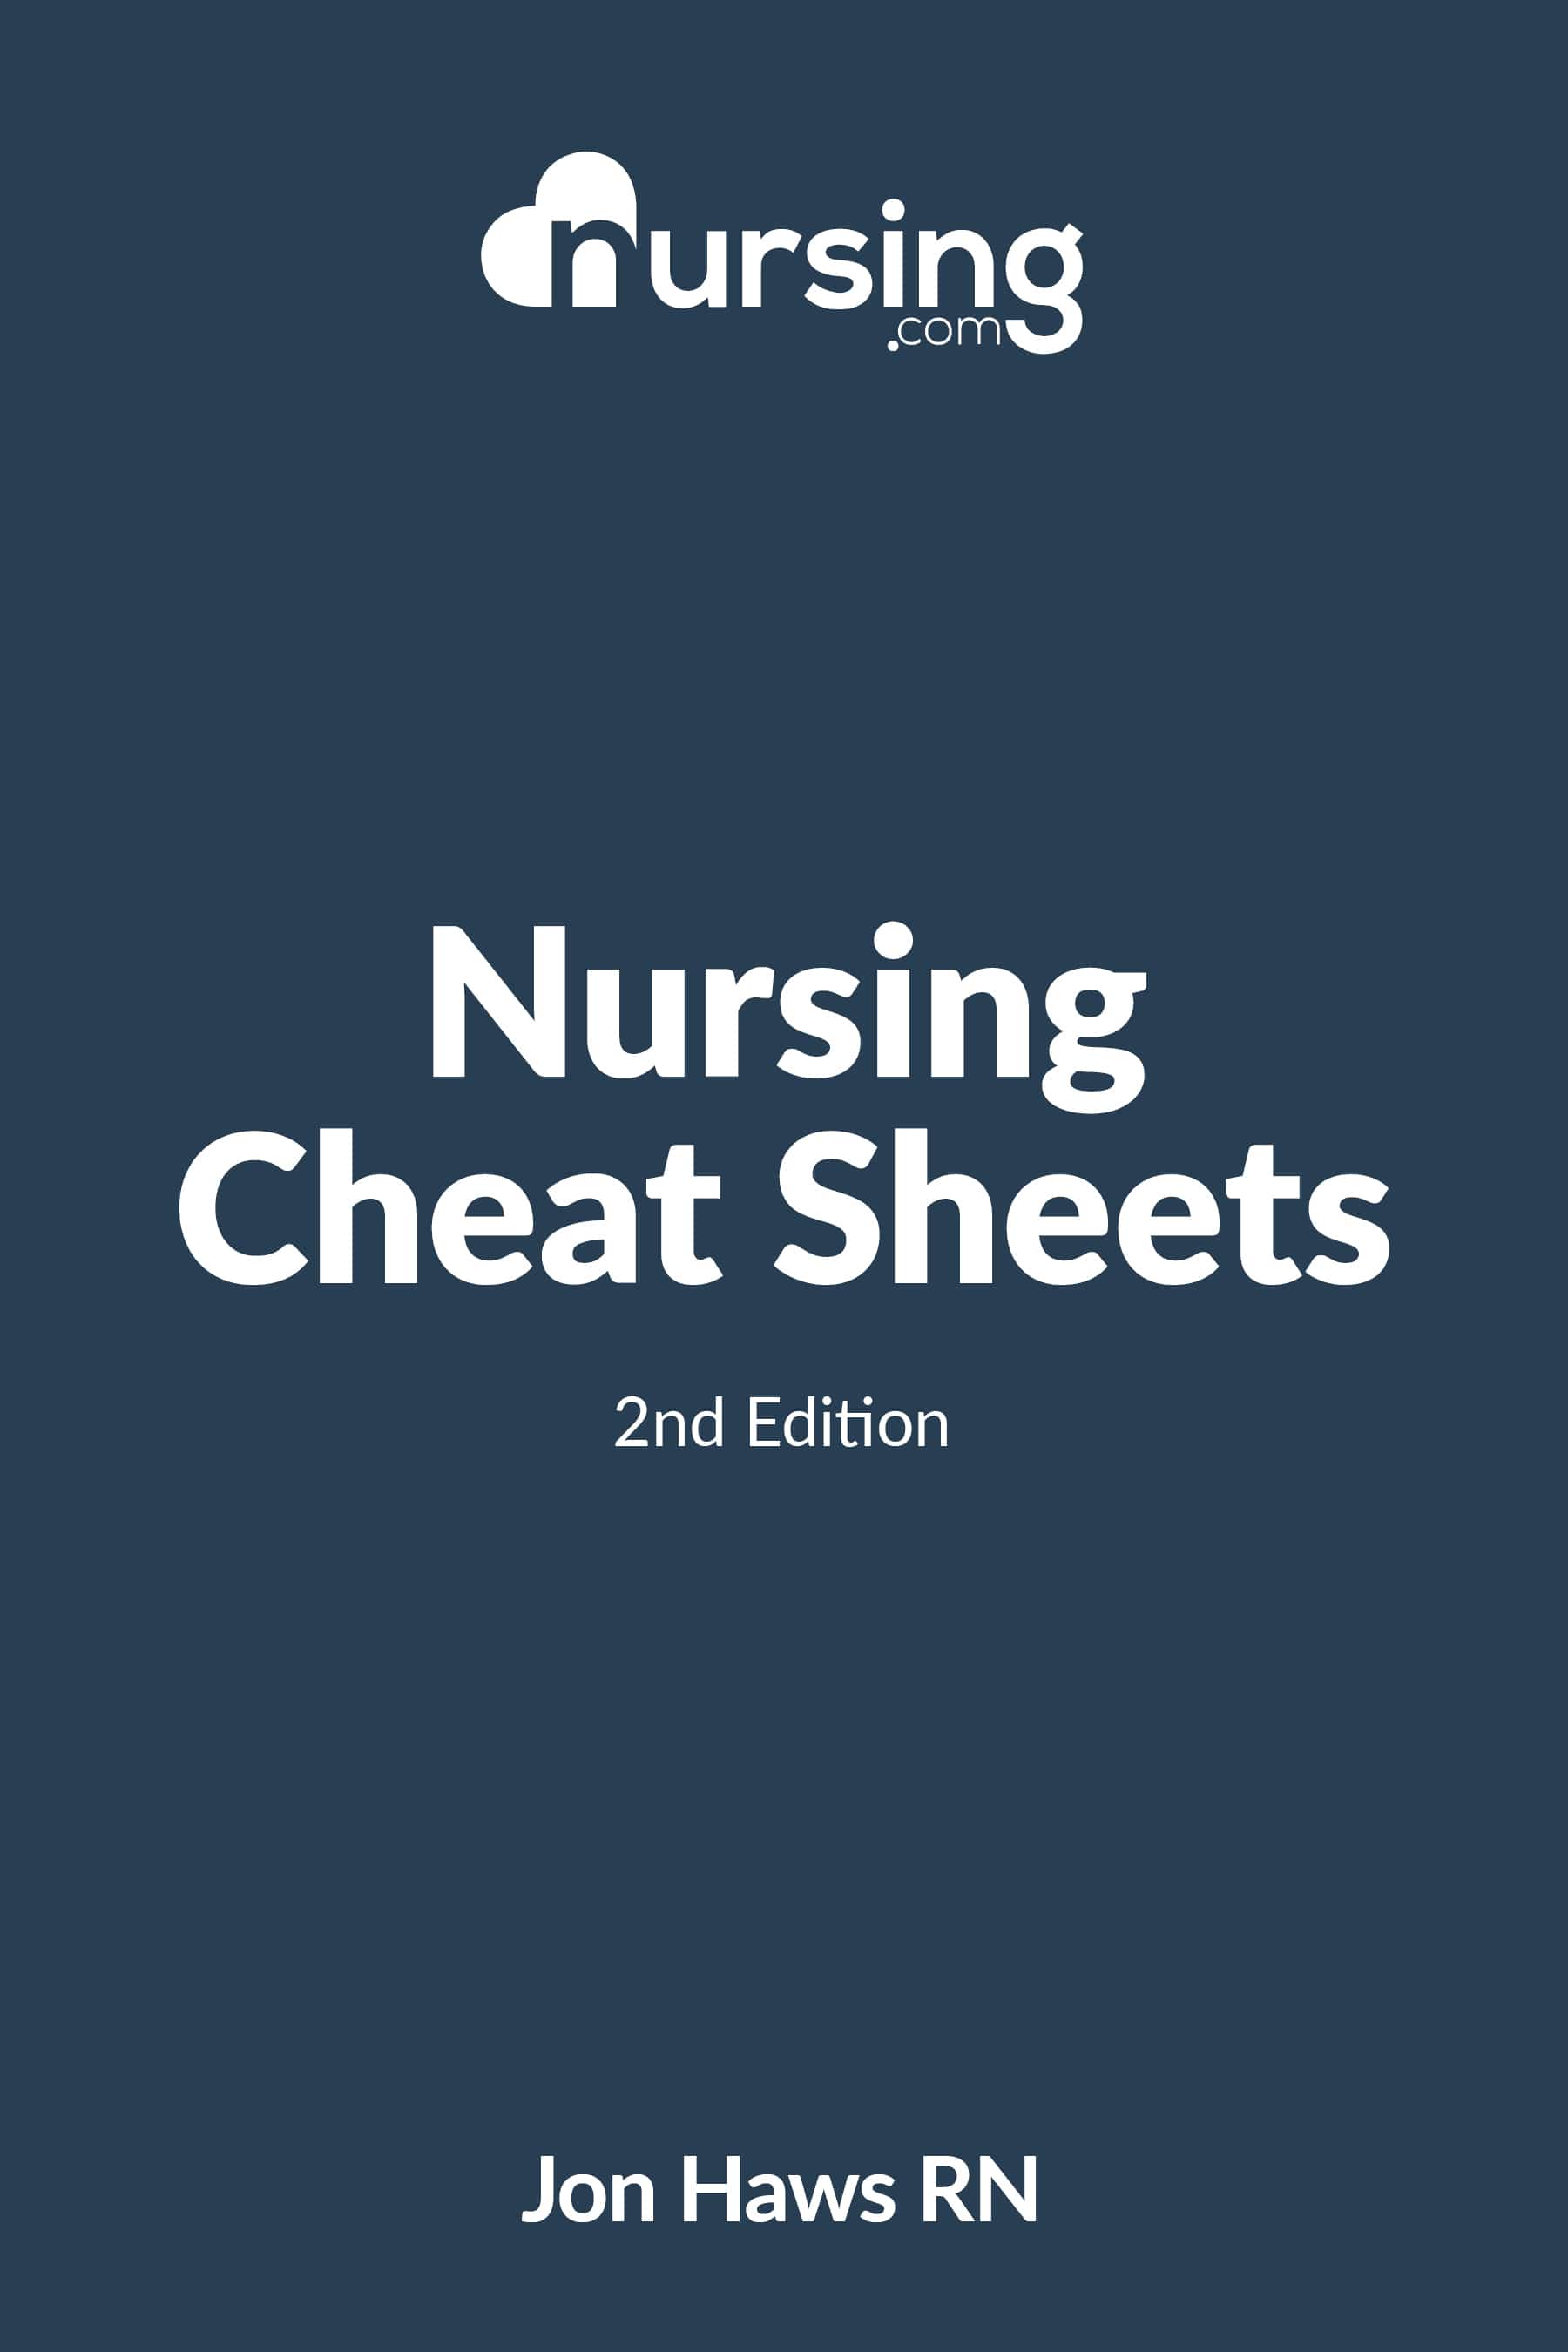 nursing cheatsheets book cover